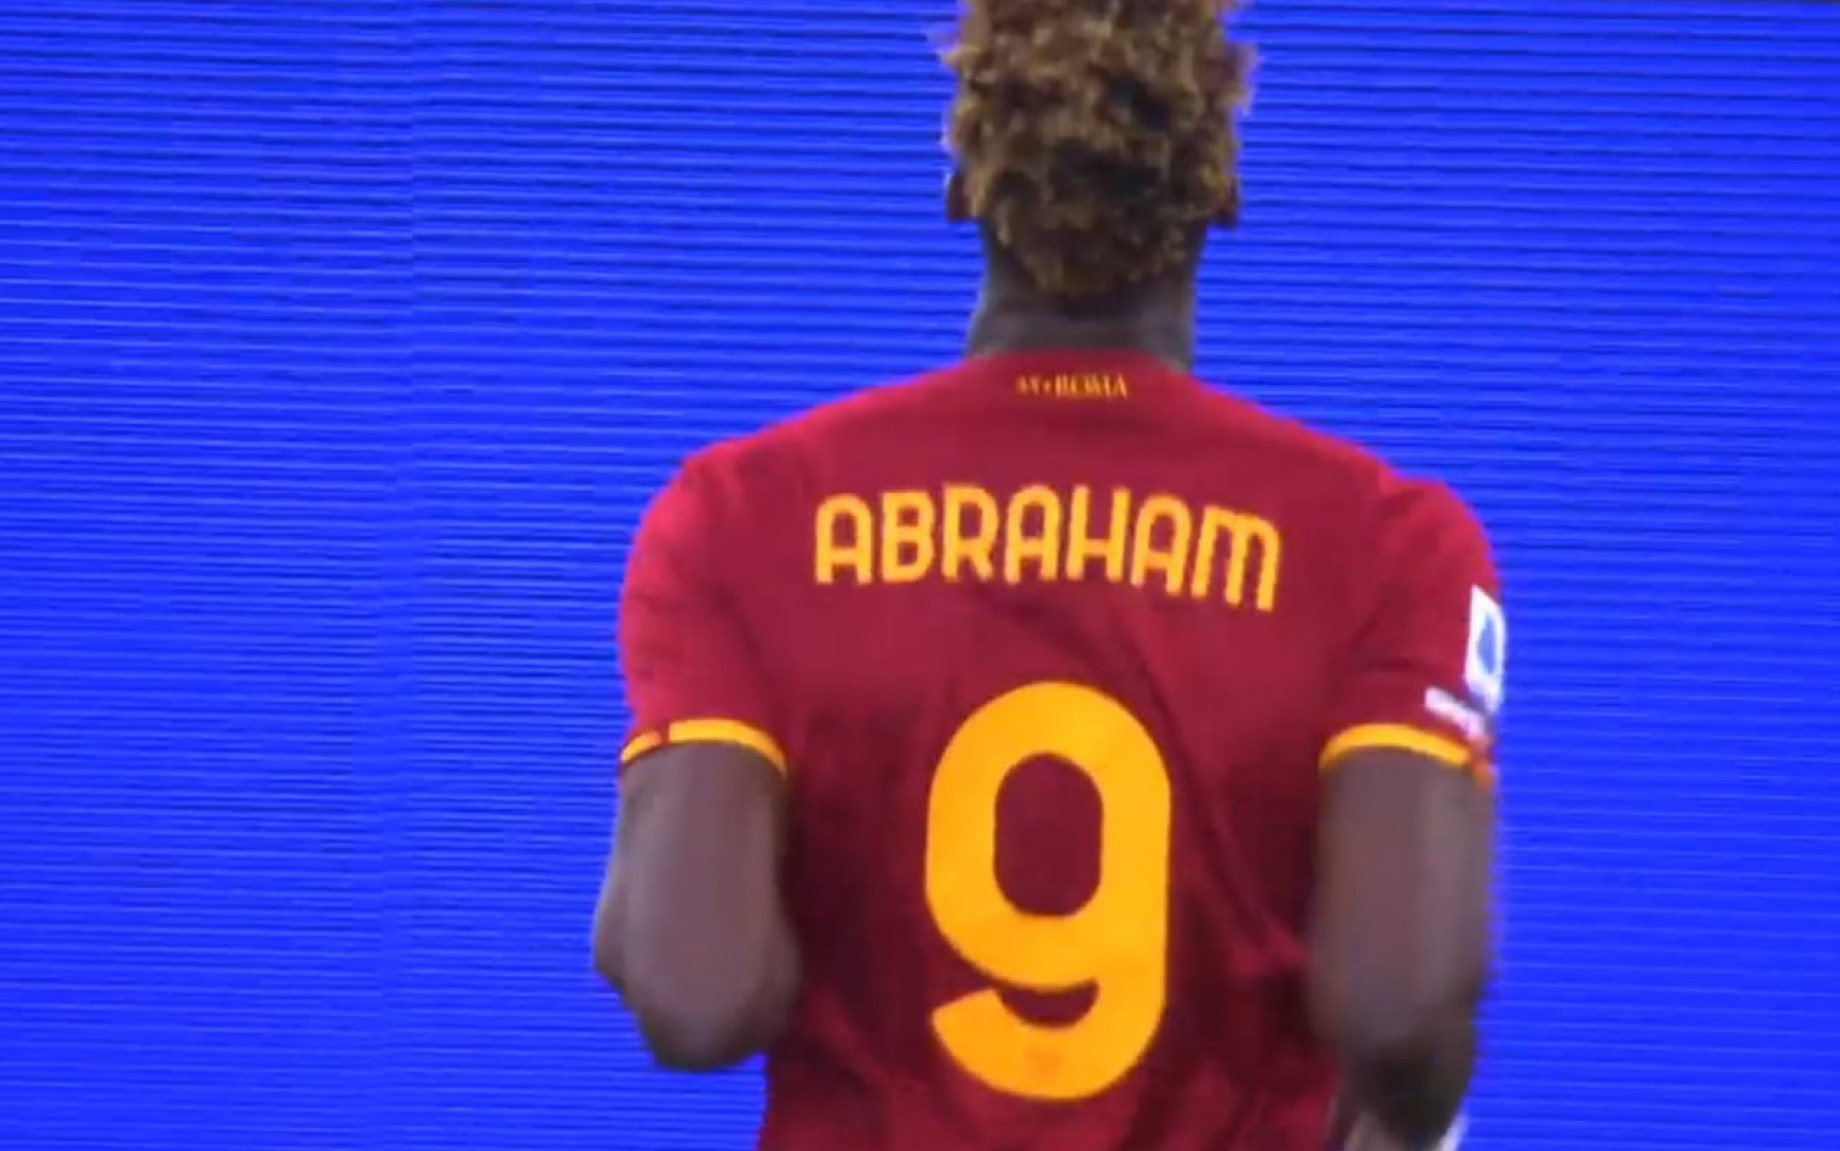 abraham-gol-esultanza-derby-screen.jpg